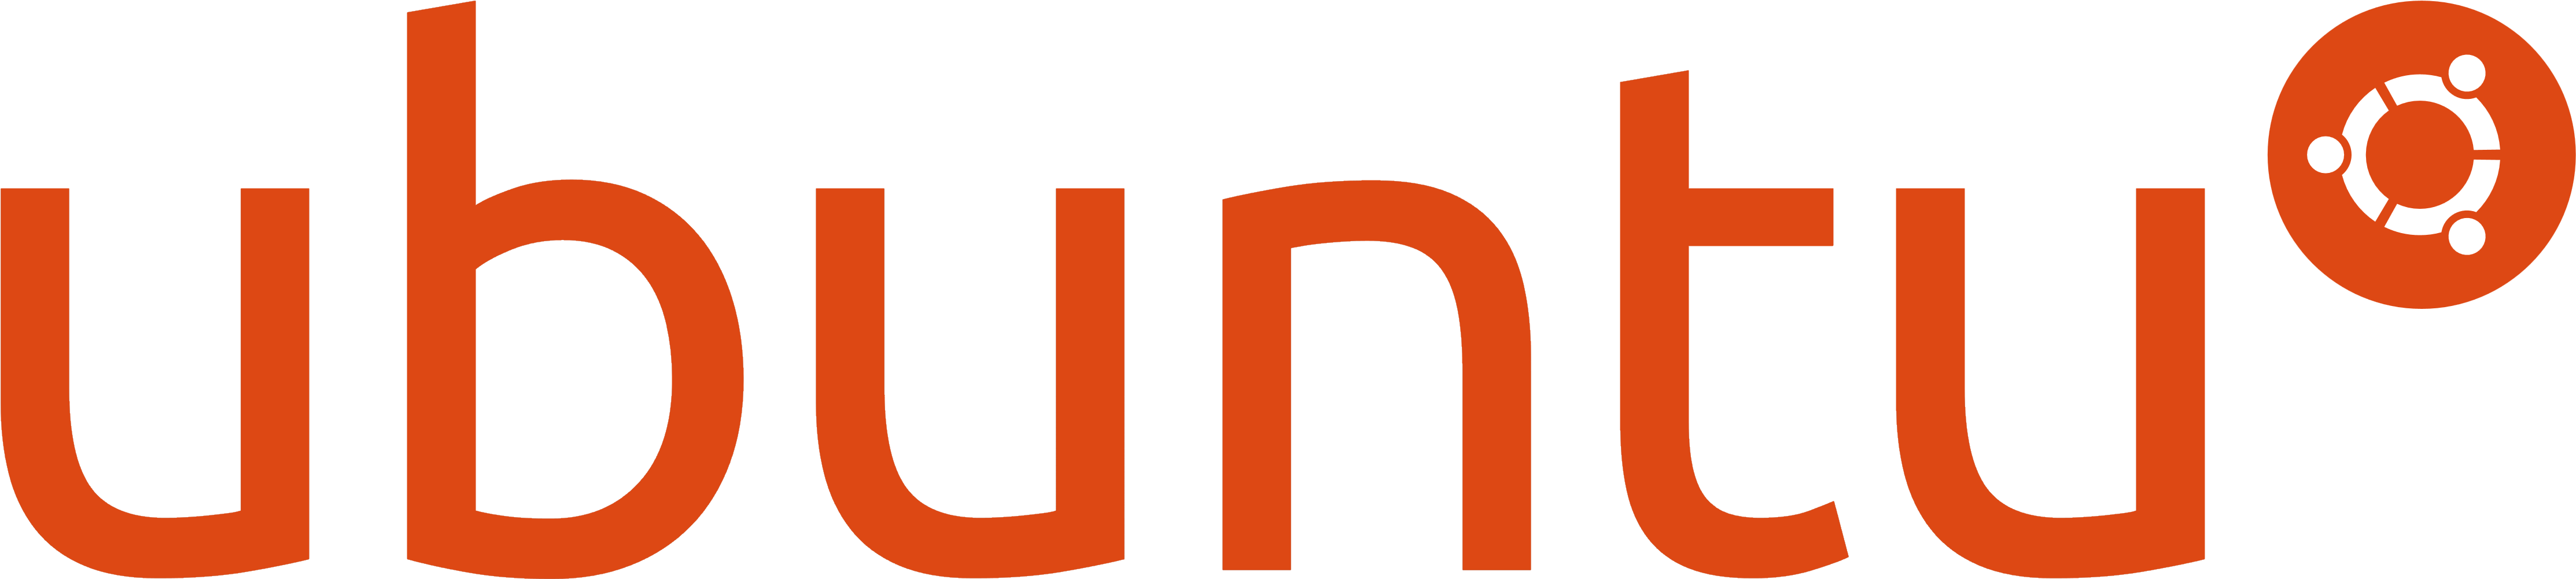 Ubuntu Logo, Orange - Open Source Os Ubuntu (4553x1745), Png Download